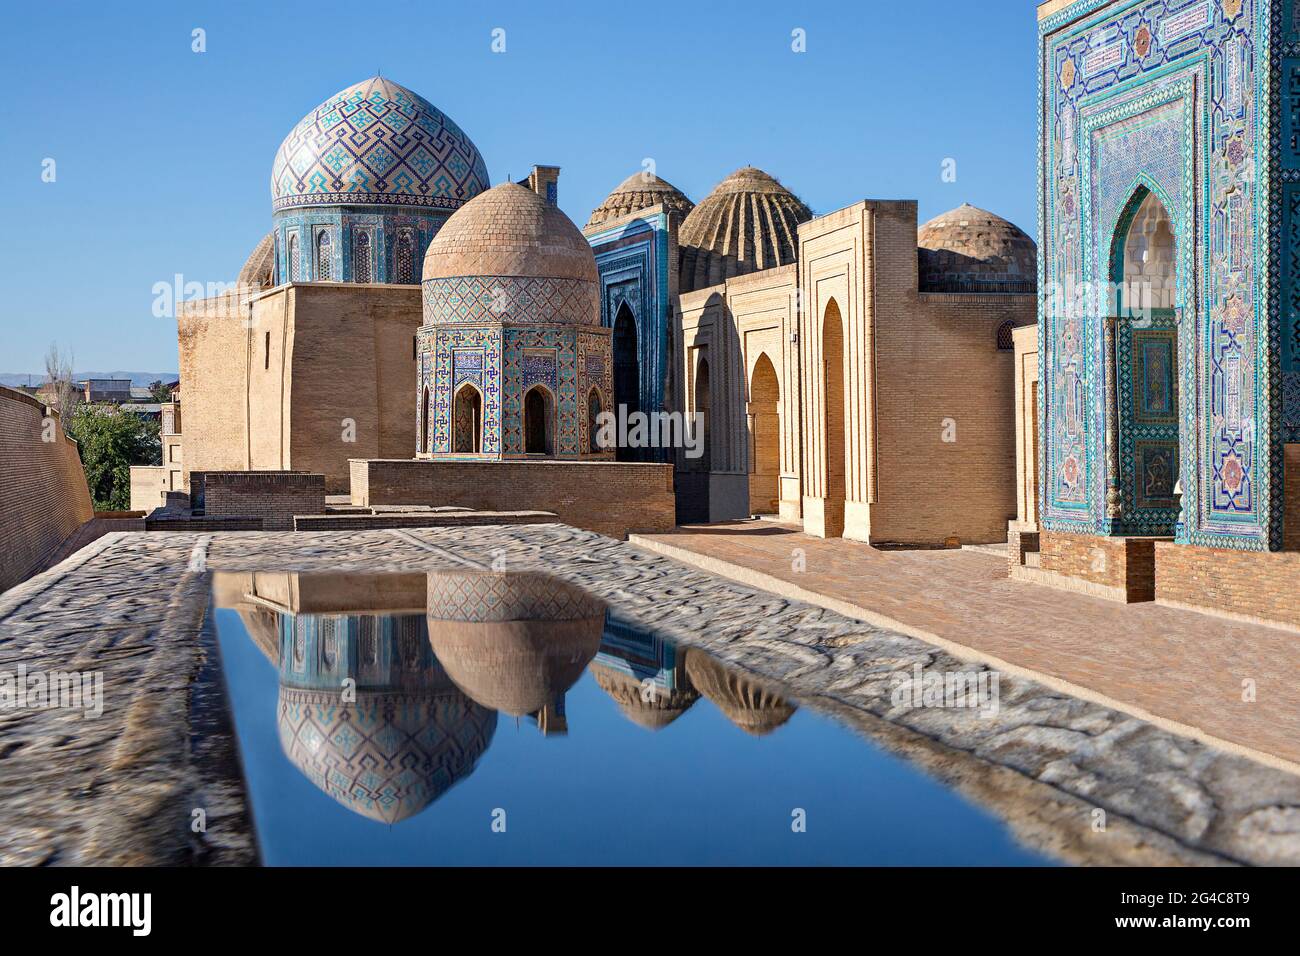 Mausoleen und Kuppeln des historischen Friedhofs von Shahi Zinda und ihre Reflexionen in Pfützen, Samarkand, Usbekistan. Stockfoto